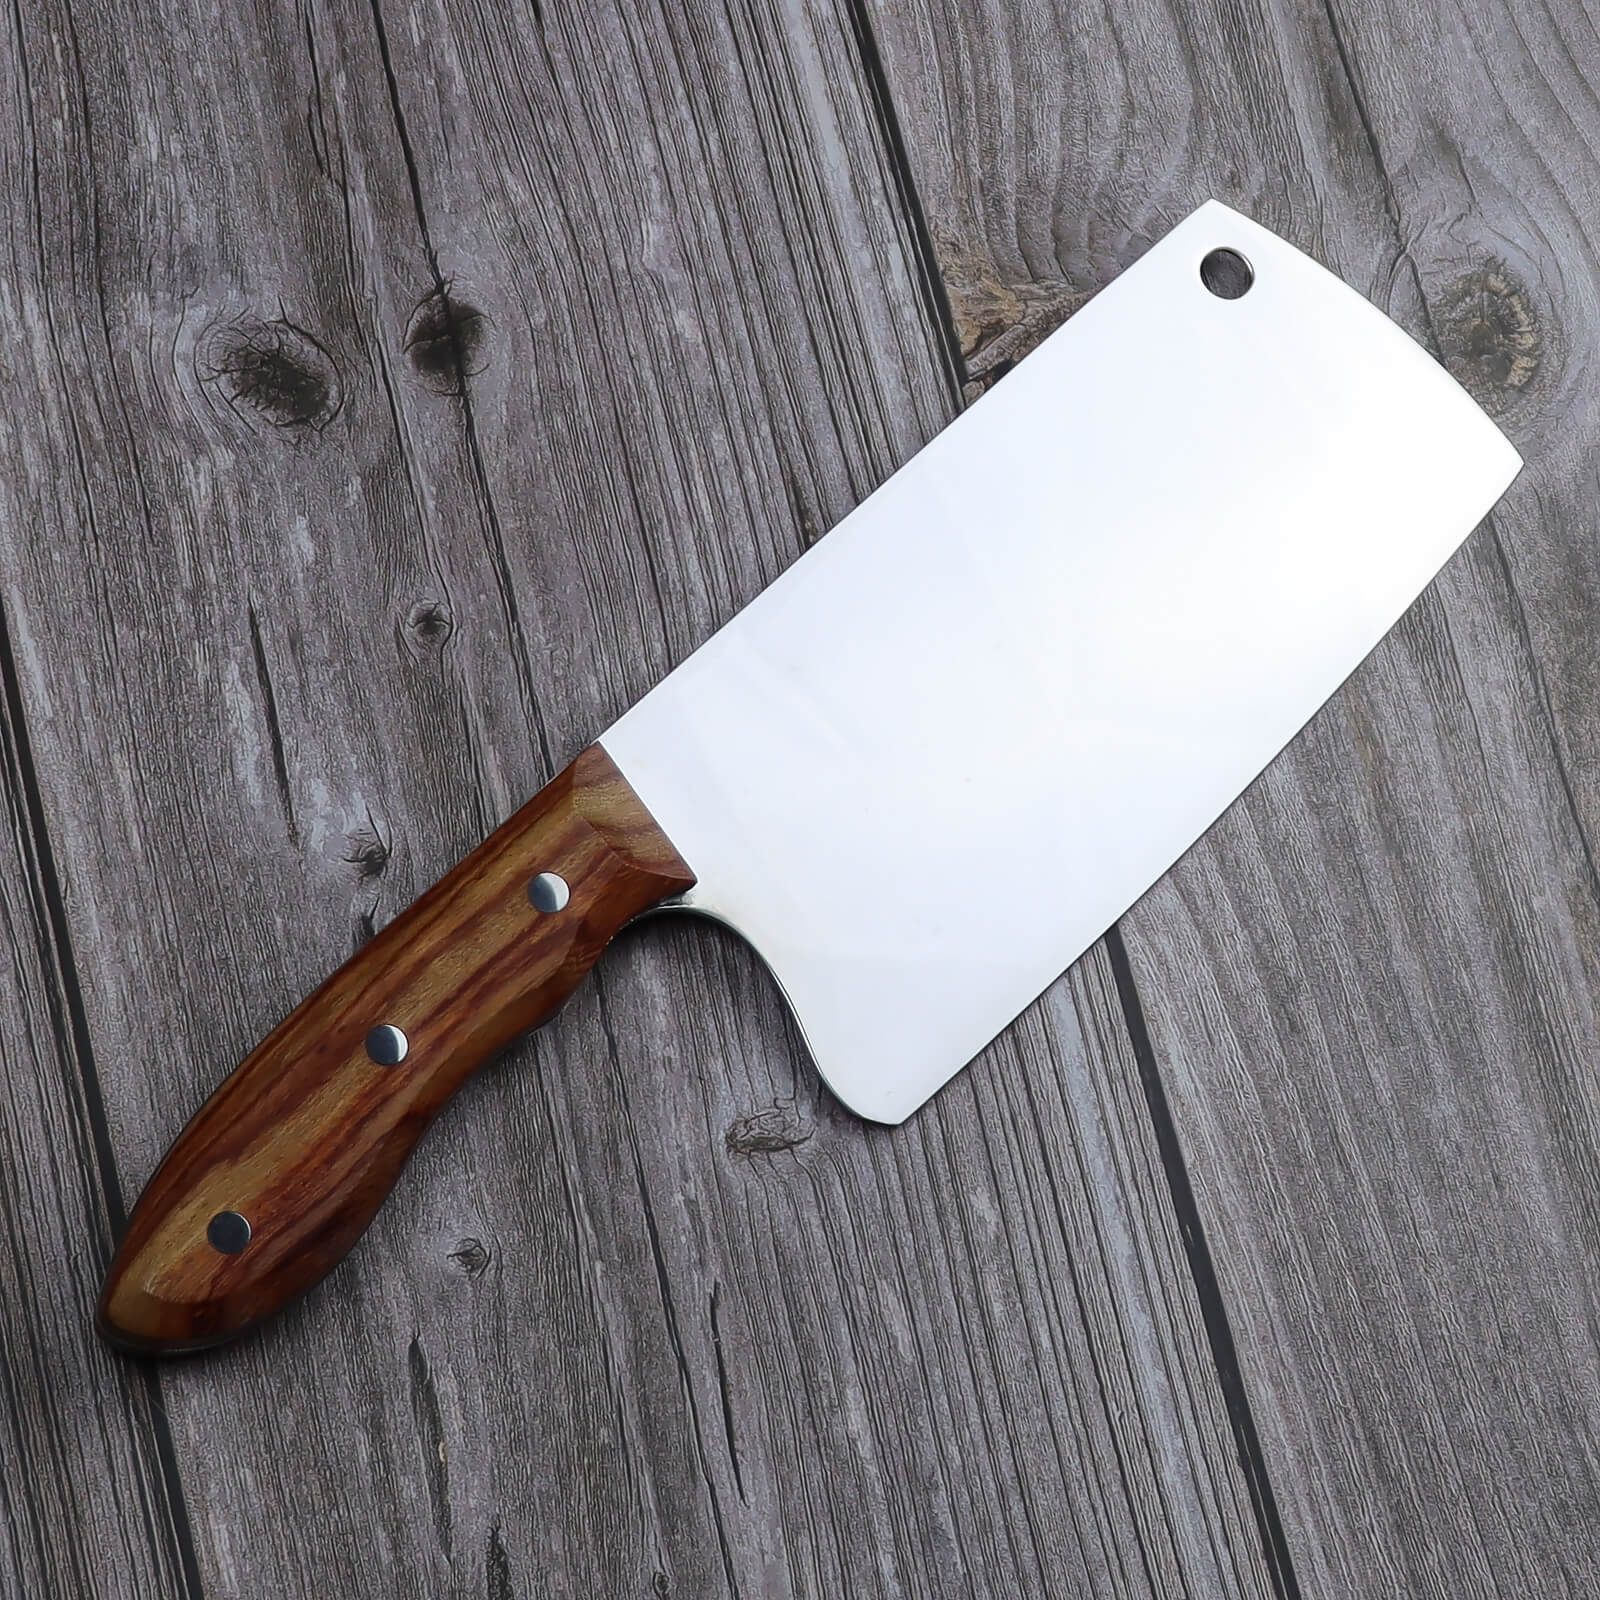 Fzkaly Vegetable Cleaver Knife 7"